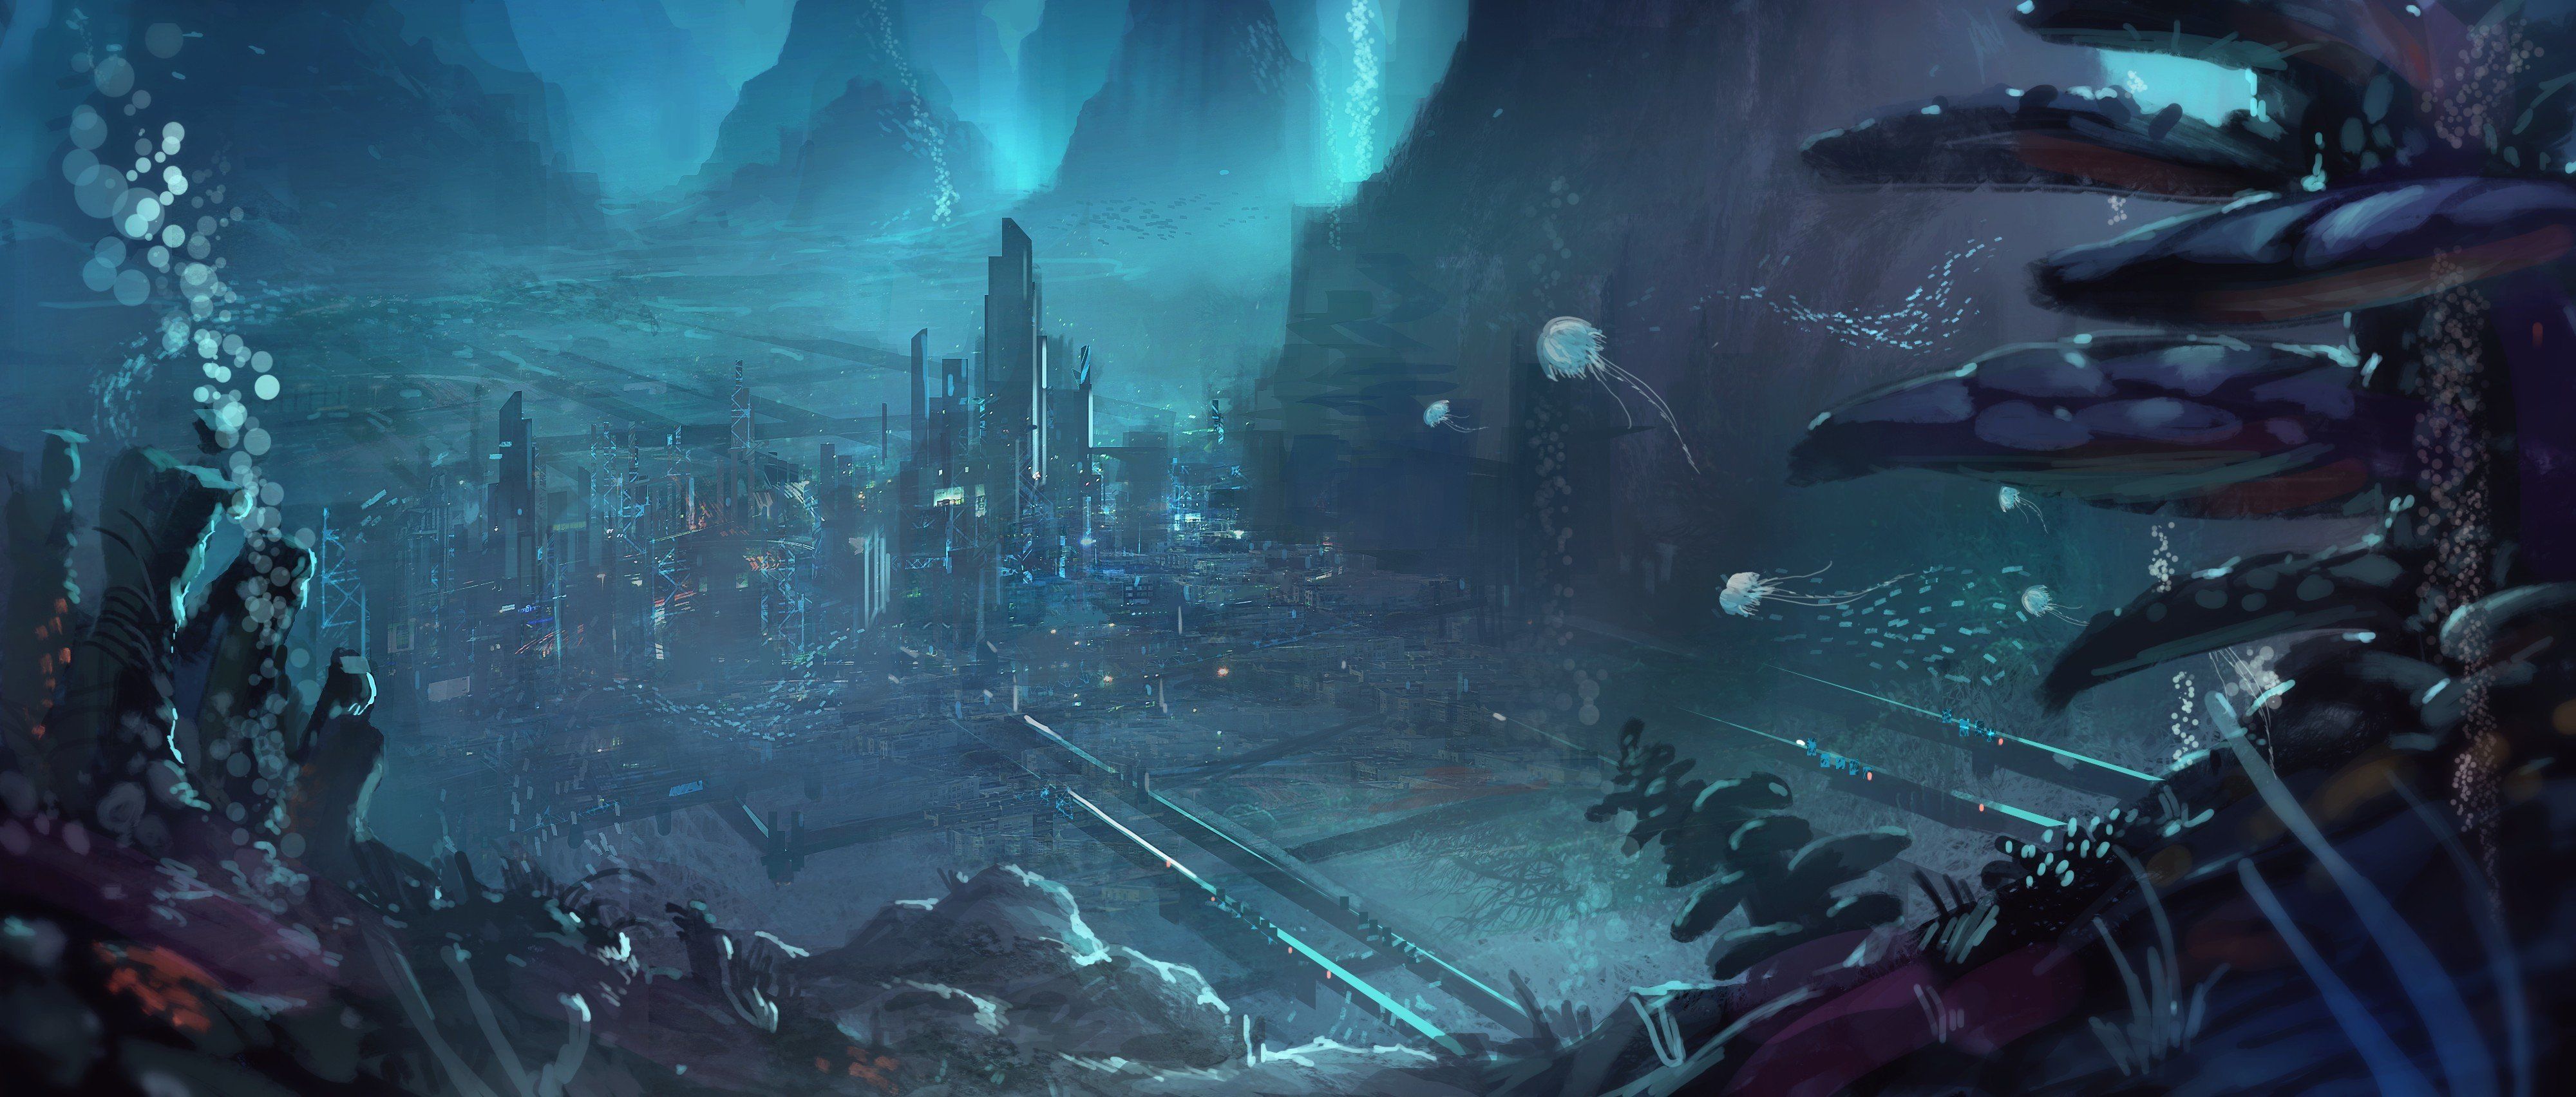 Background For Alien City 4K wallpaper